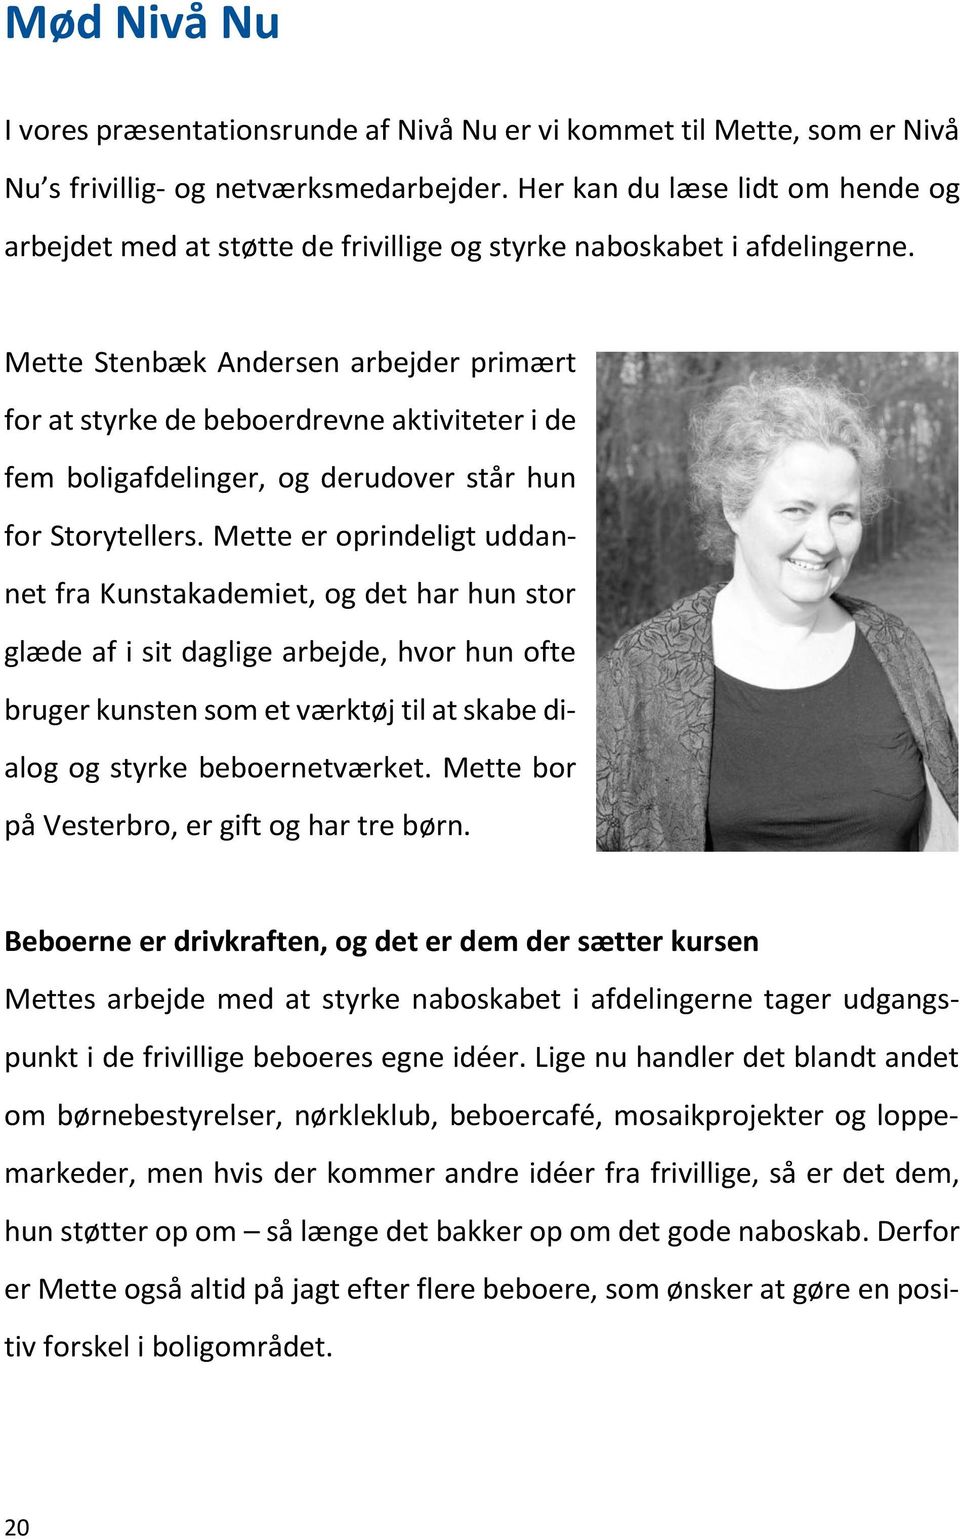 Mette Stenbæk Andersen arbejder primært for at styrke de beboerdrevne aktiviteter i de fem boligafdelinger, og derudover står hun for Storytellers.